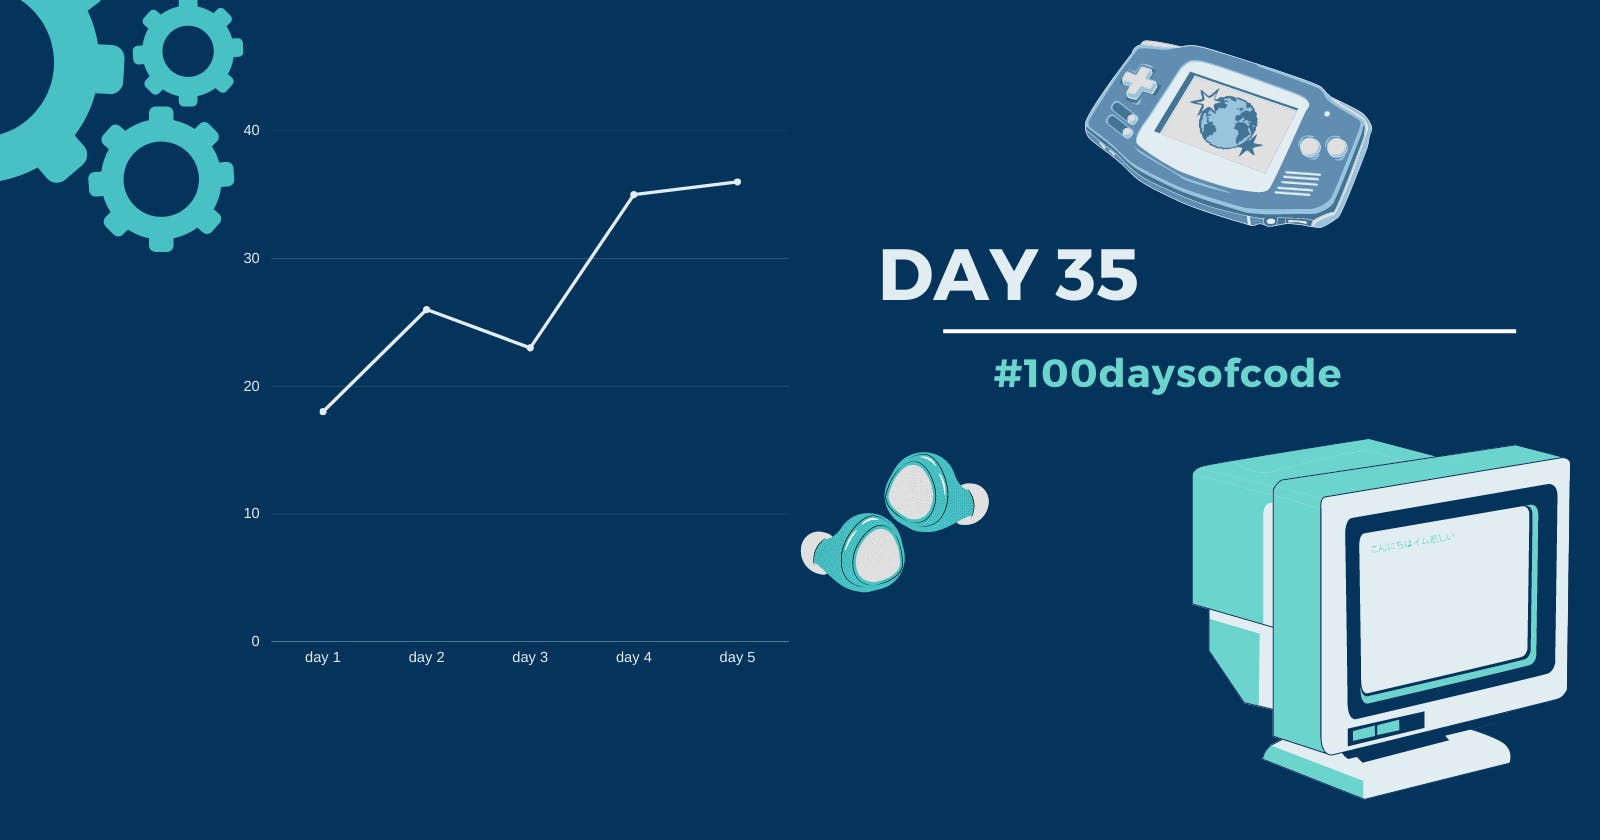 Day 35 in #100daysofcode challenge